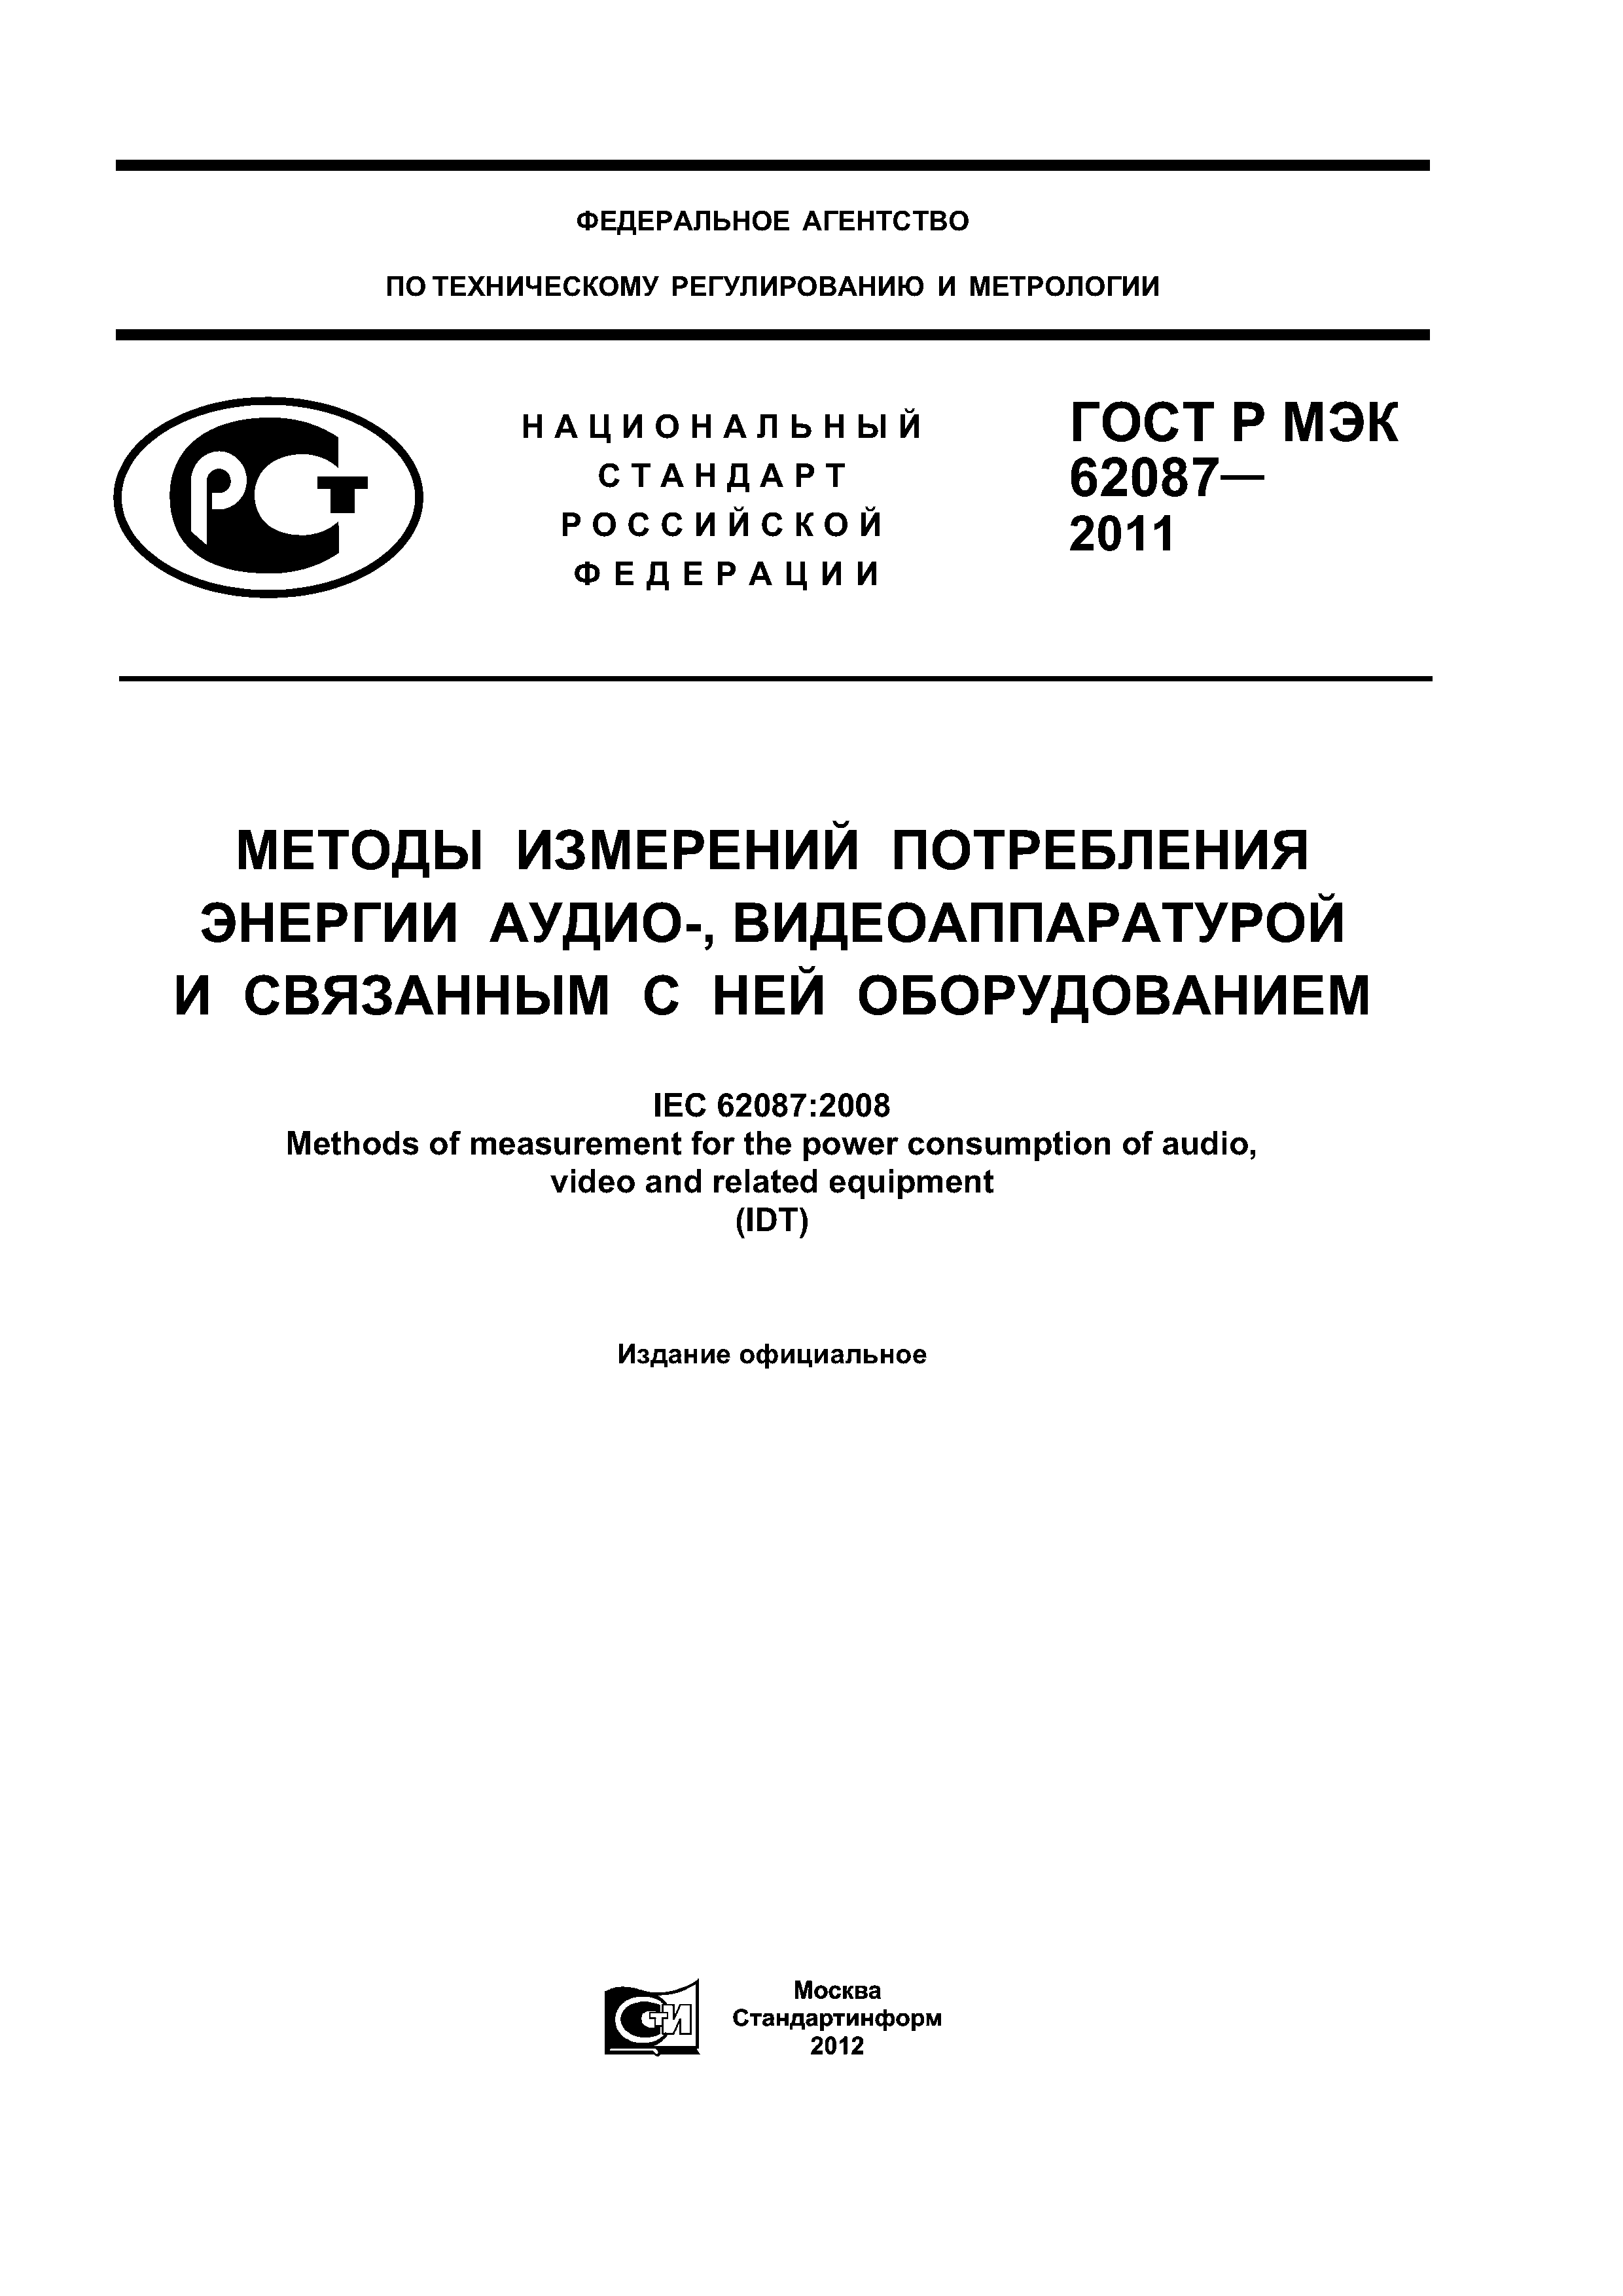 ГОСТ Р МЭК 62087-2011